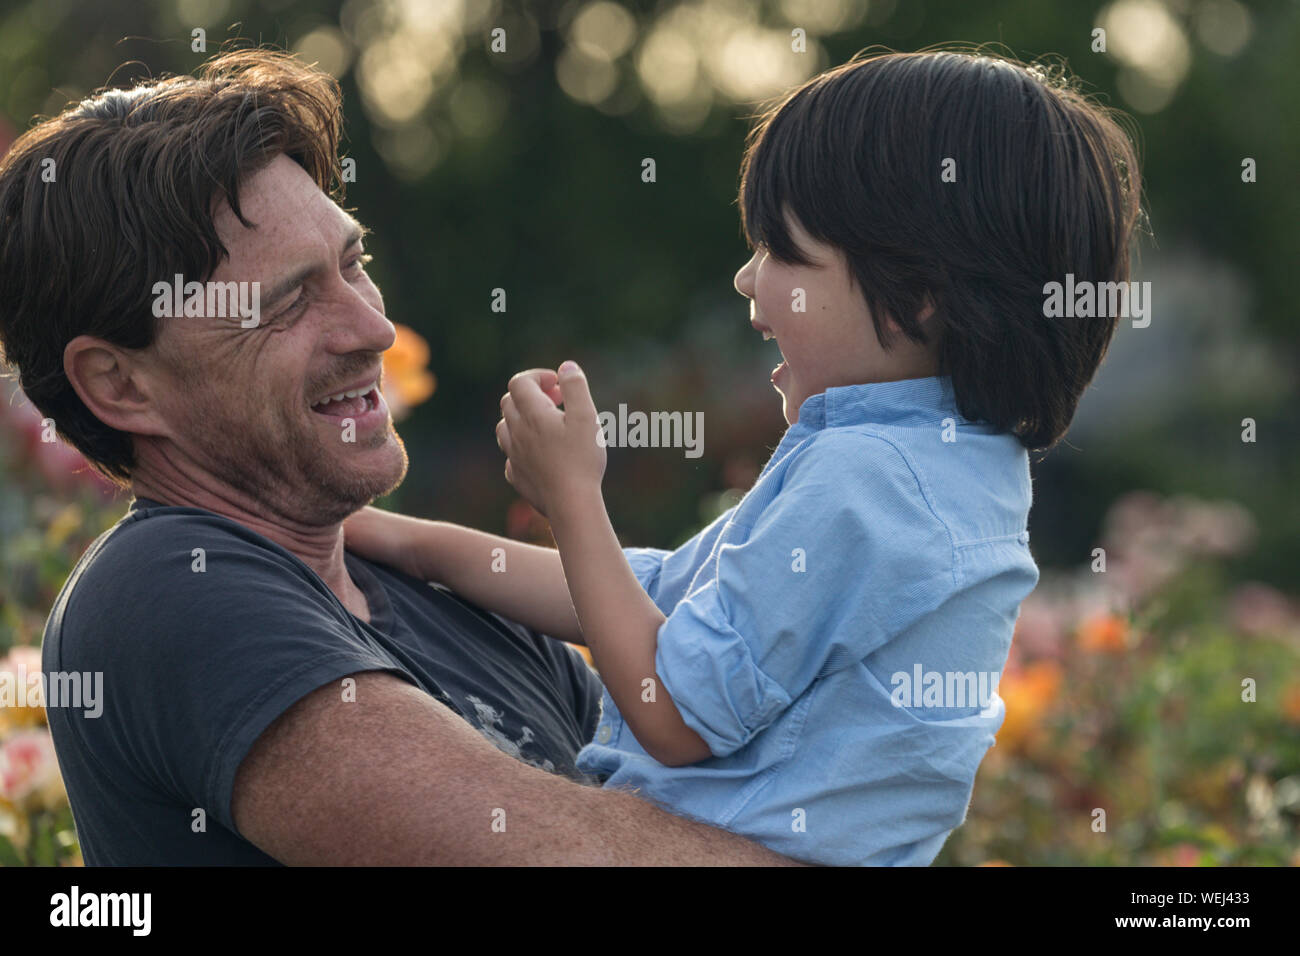 Kaukasische Vater Holding gemischt ethnischen asiatischen 5-jährigen Sohn, beide glücklich, San Jose, Kalifornien Stockfoto